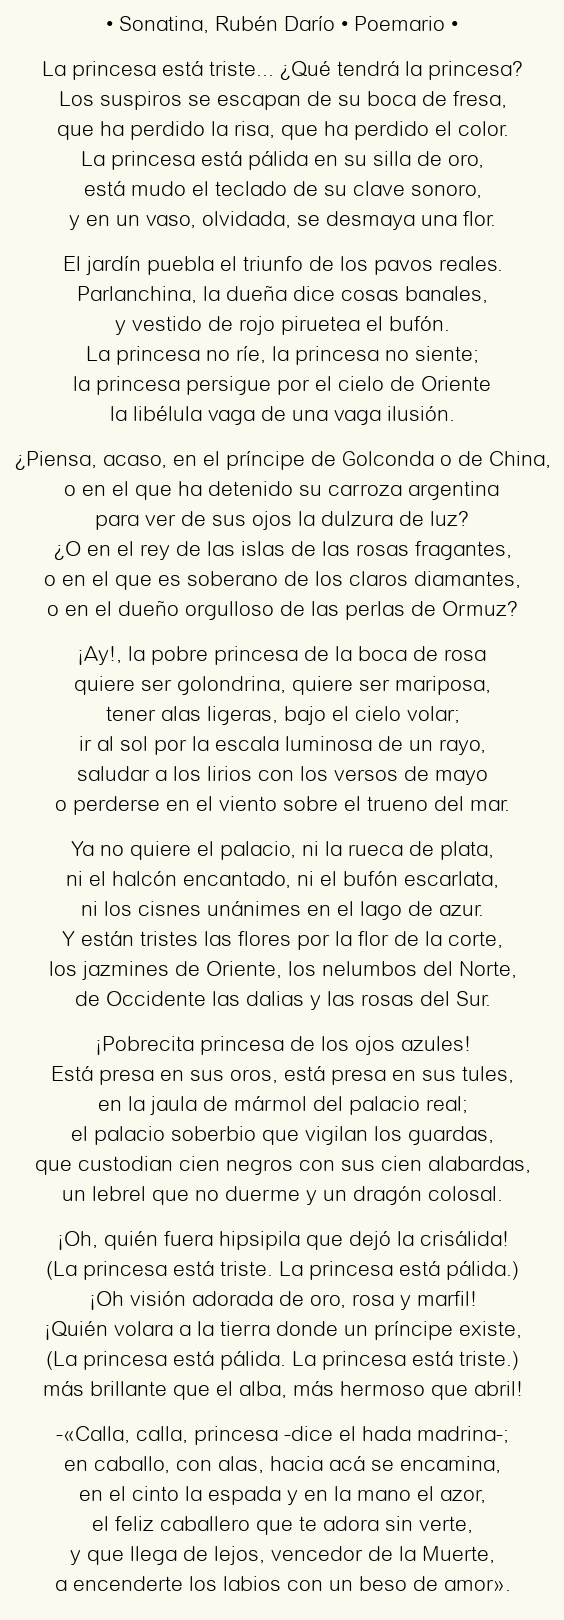 Imagen con el poema Sonatina, por Rubén Darío